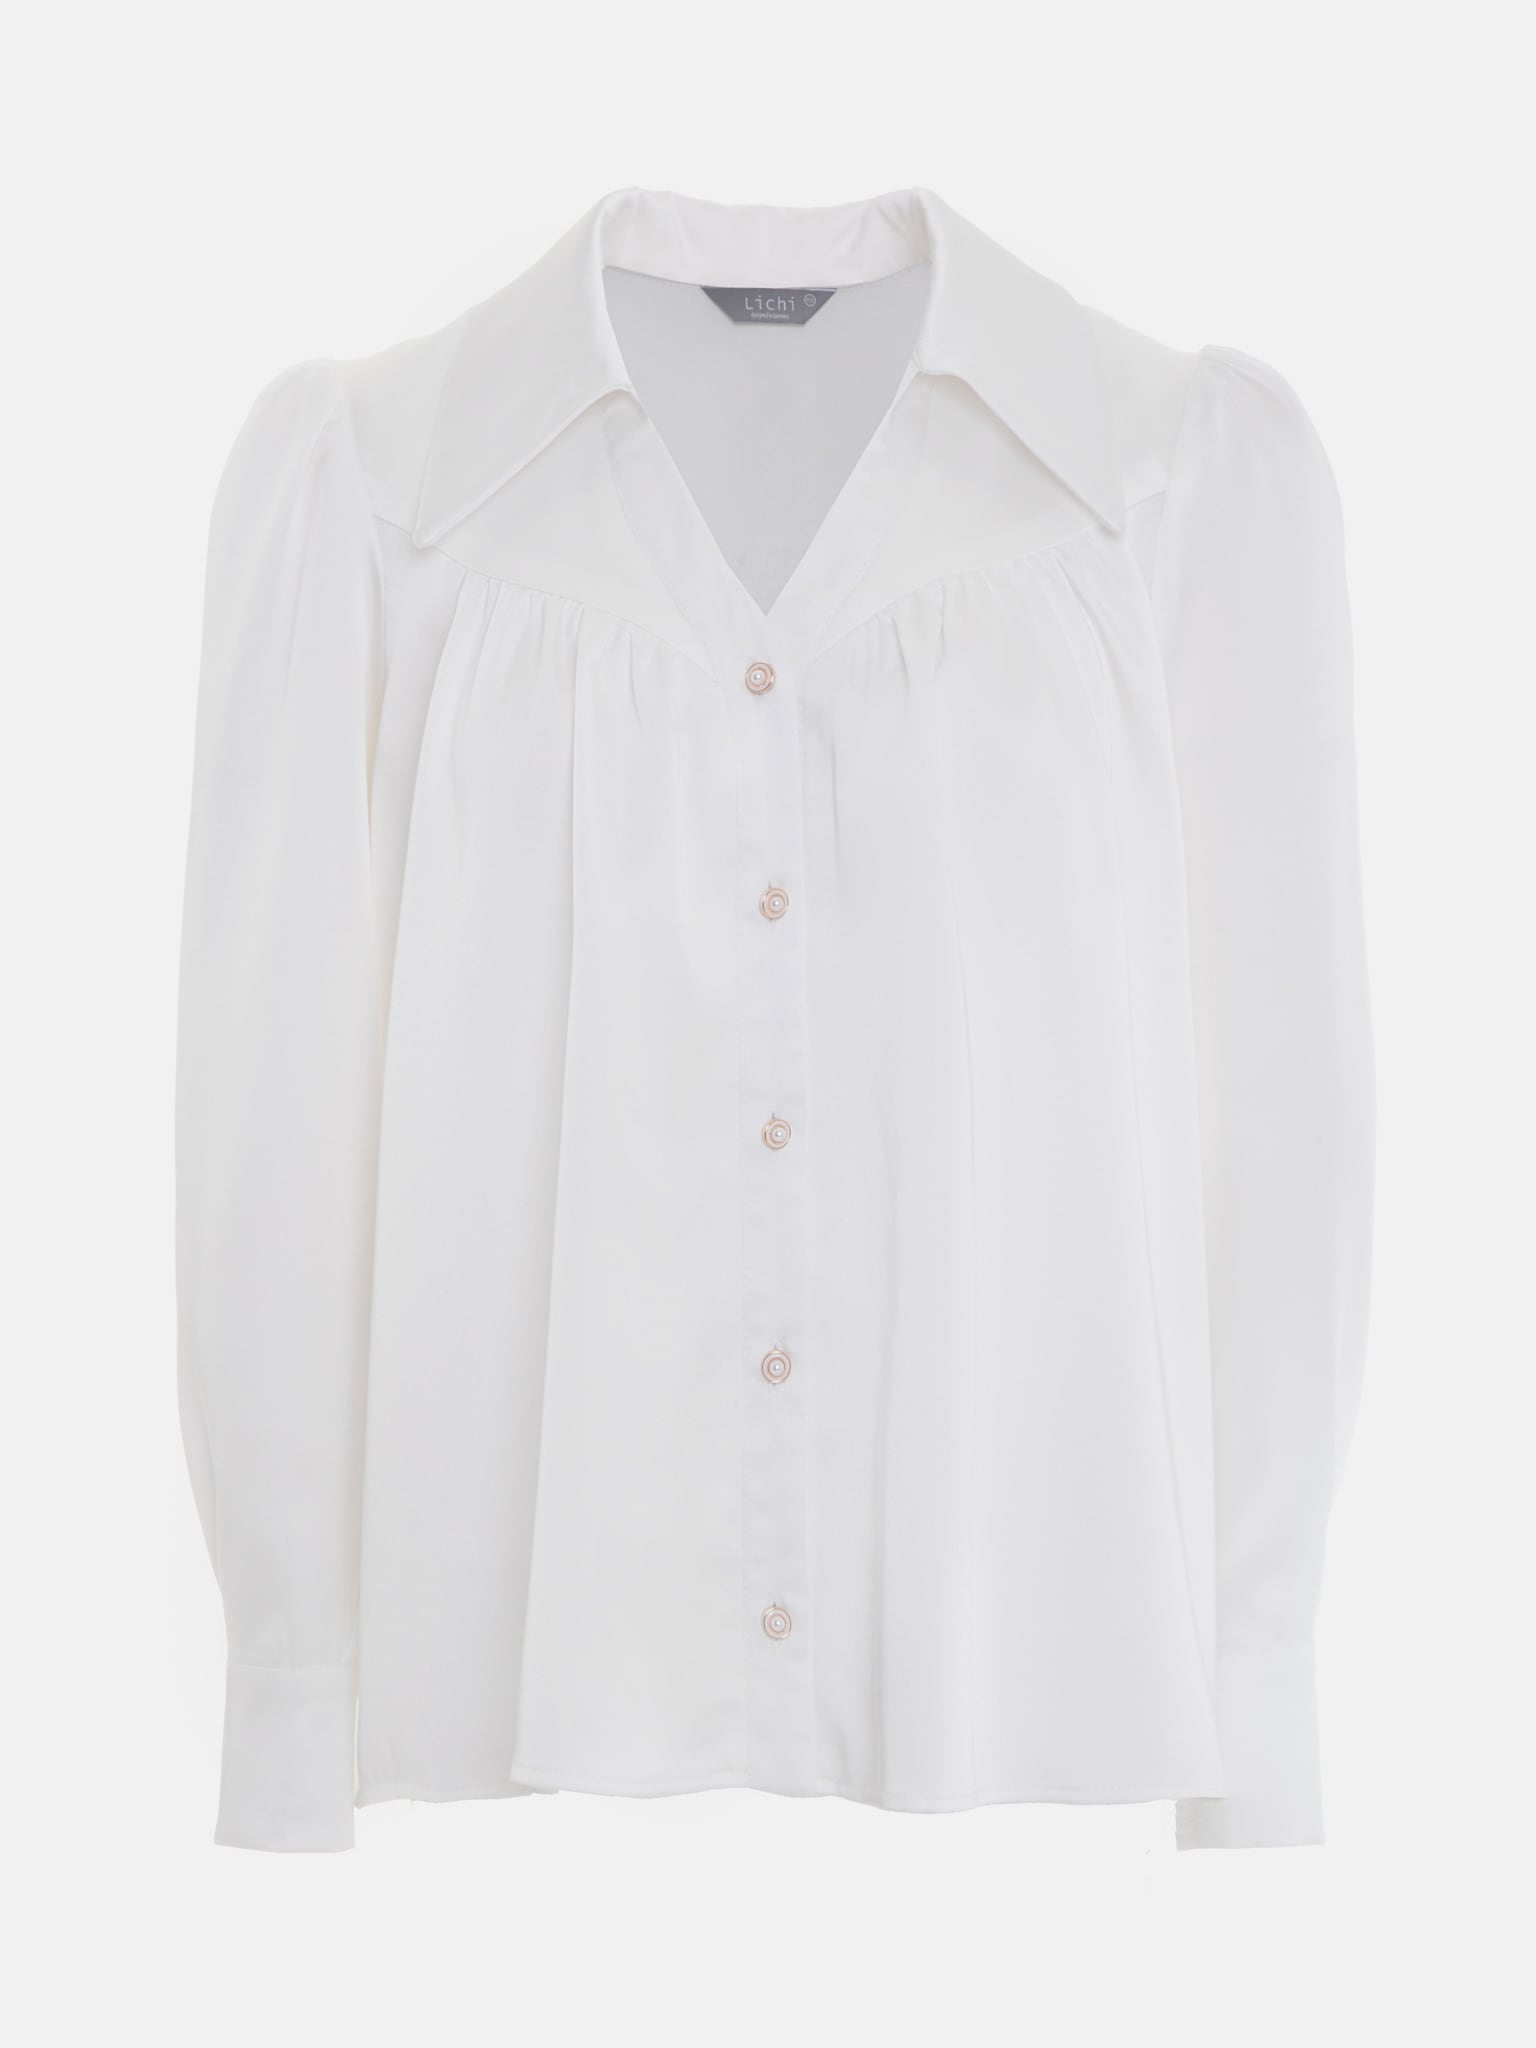 Gerade Bluse mit feinen Falten und - store Perlmuttknöpfen :: fashion LICHI Online